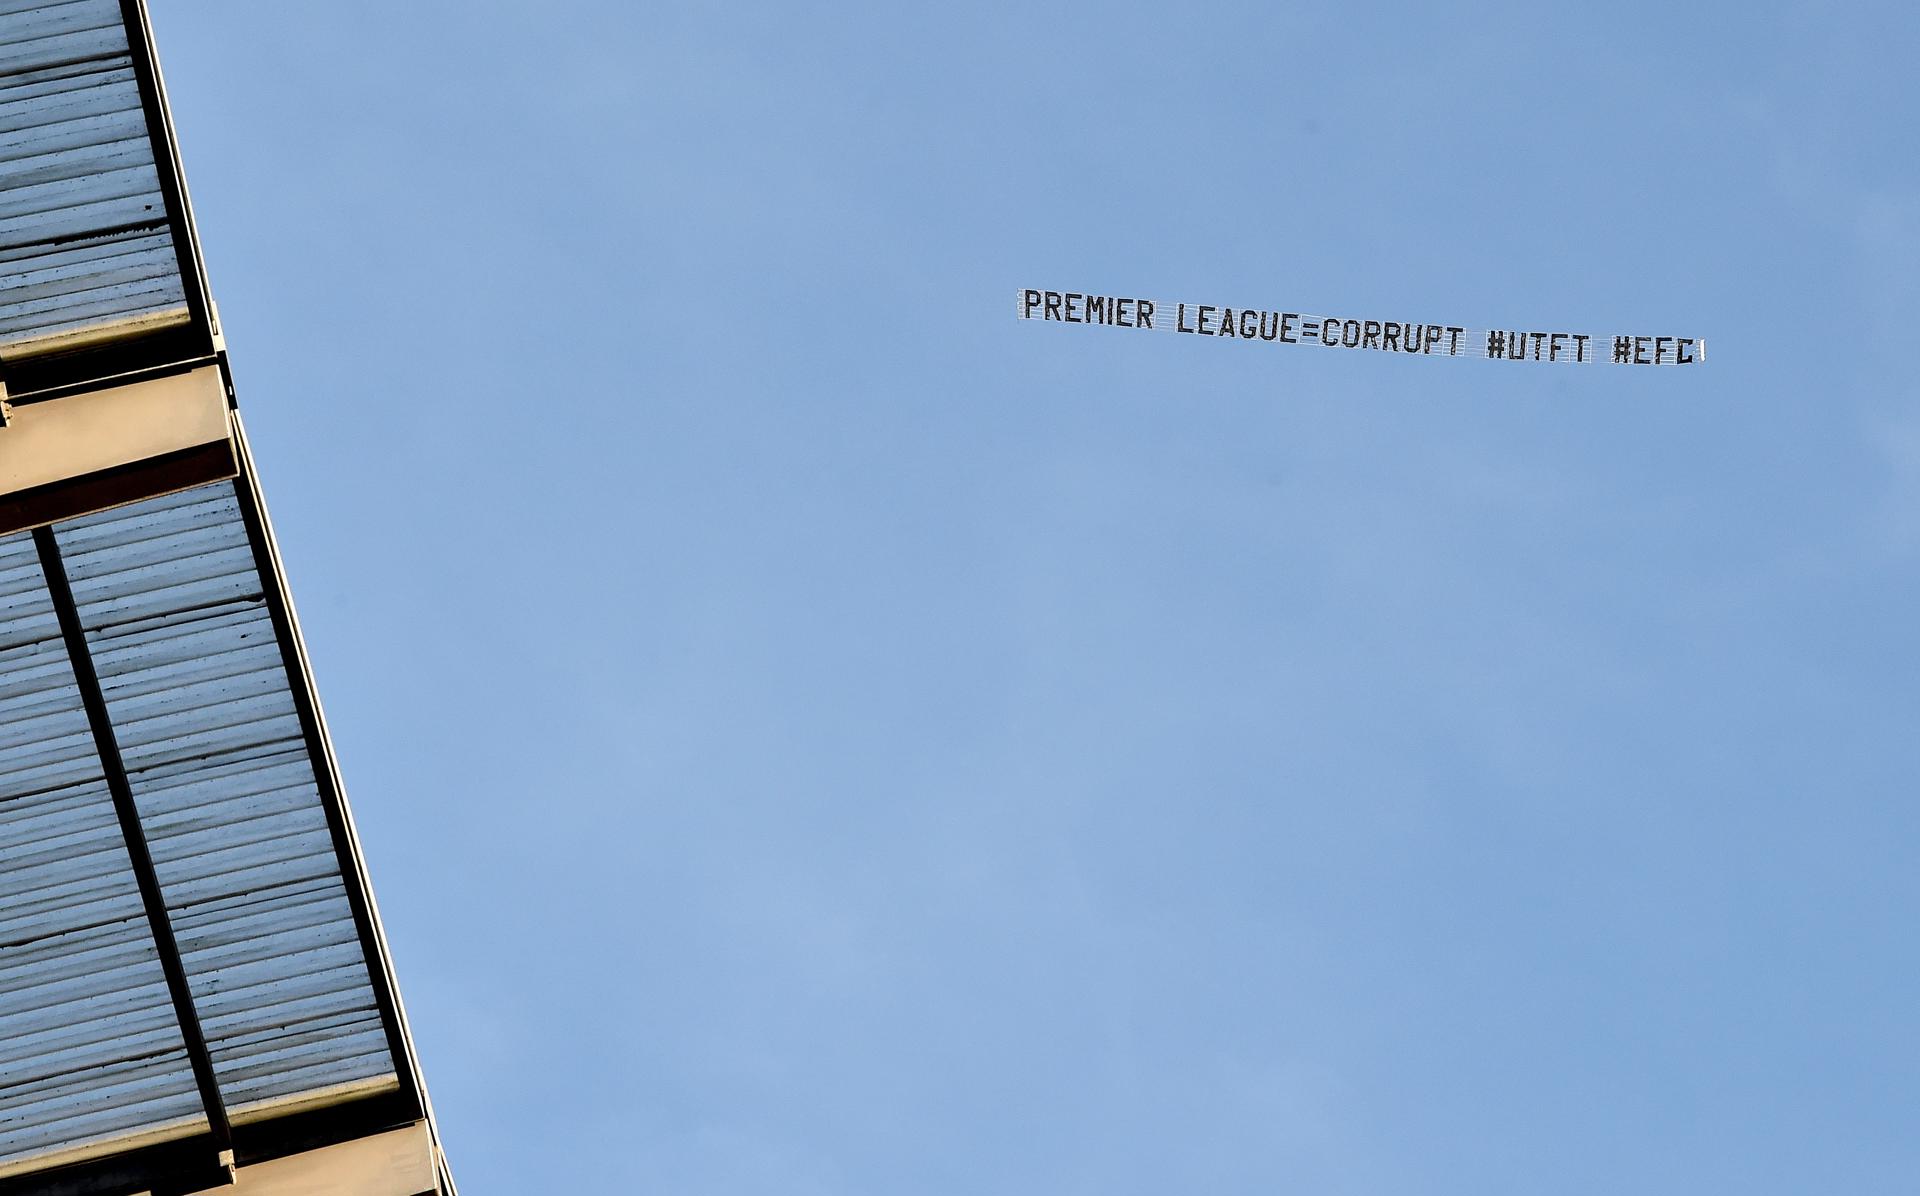 Les supporteurs d'Everton ont utilisé un avion pour protester contre la Premier League